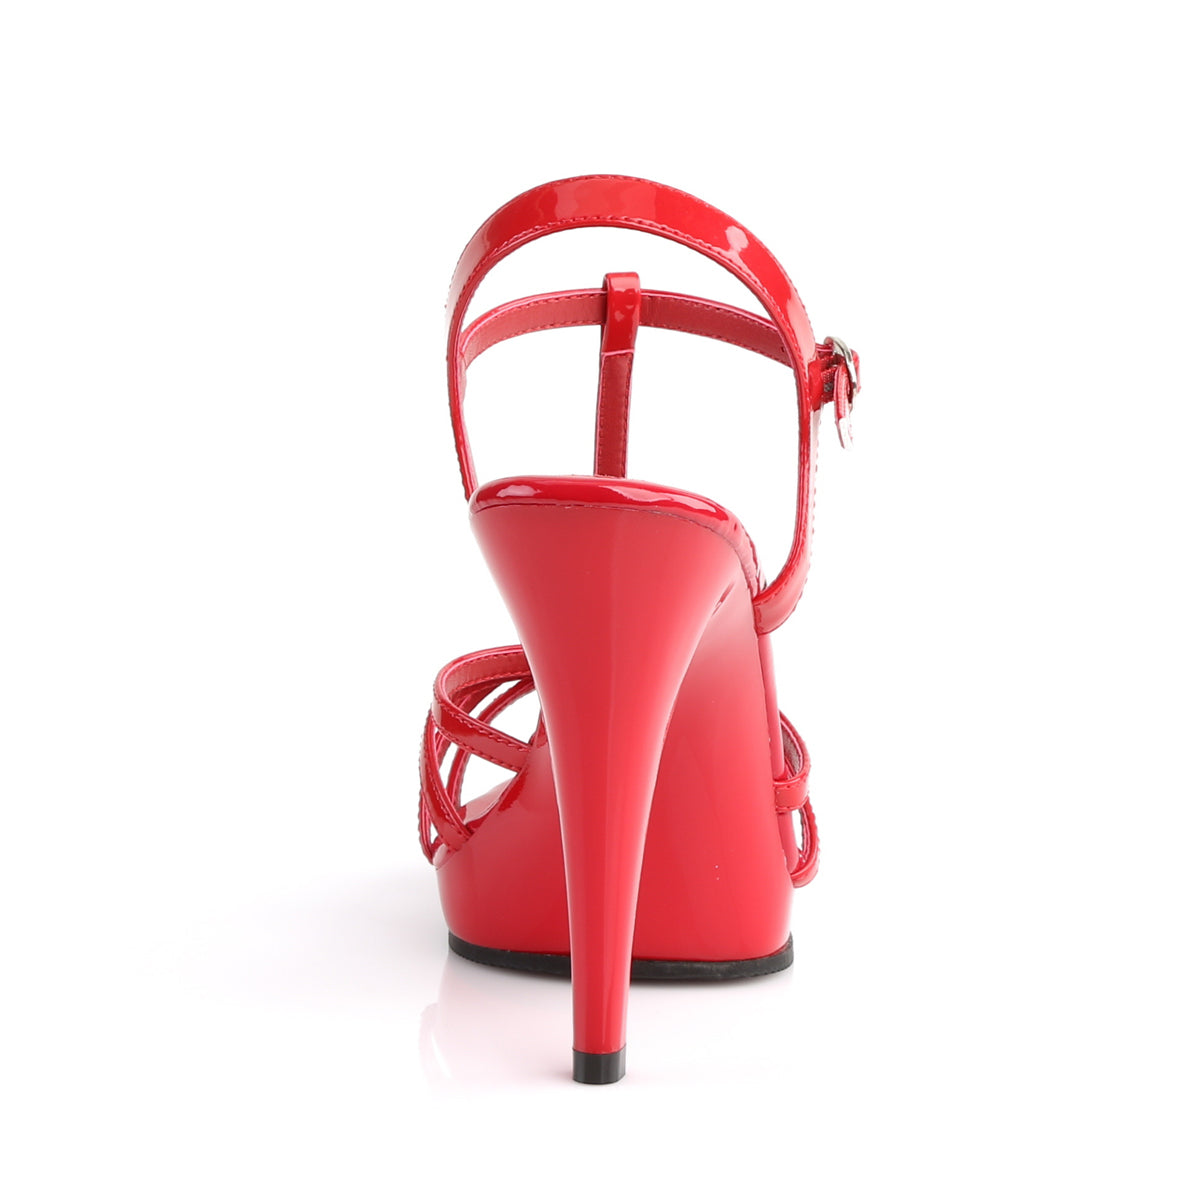 Fabulicious Sandali da donna FLAIR-420 Pat / rosso rosso / rosso